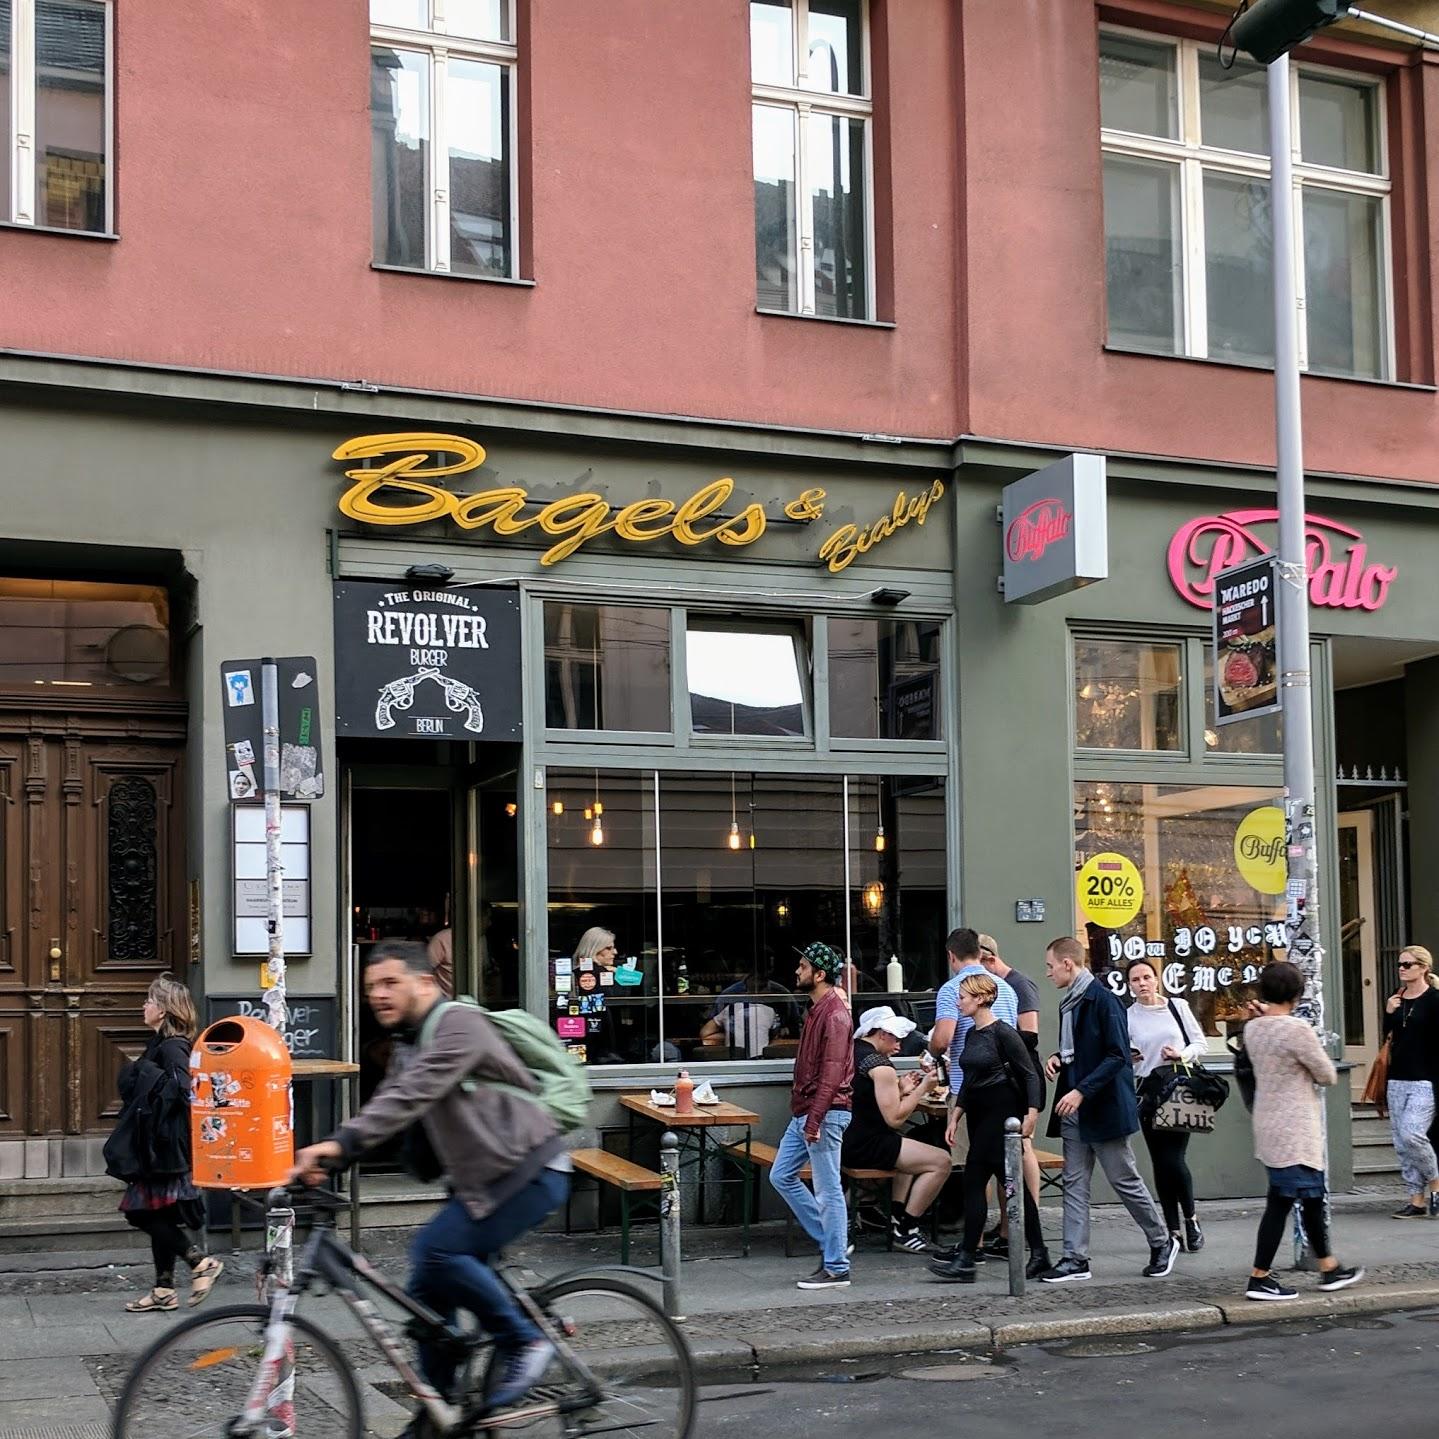 Restaurant "Revolver Burger" in Berlin